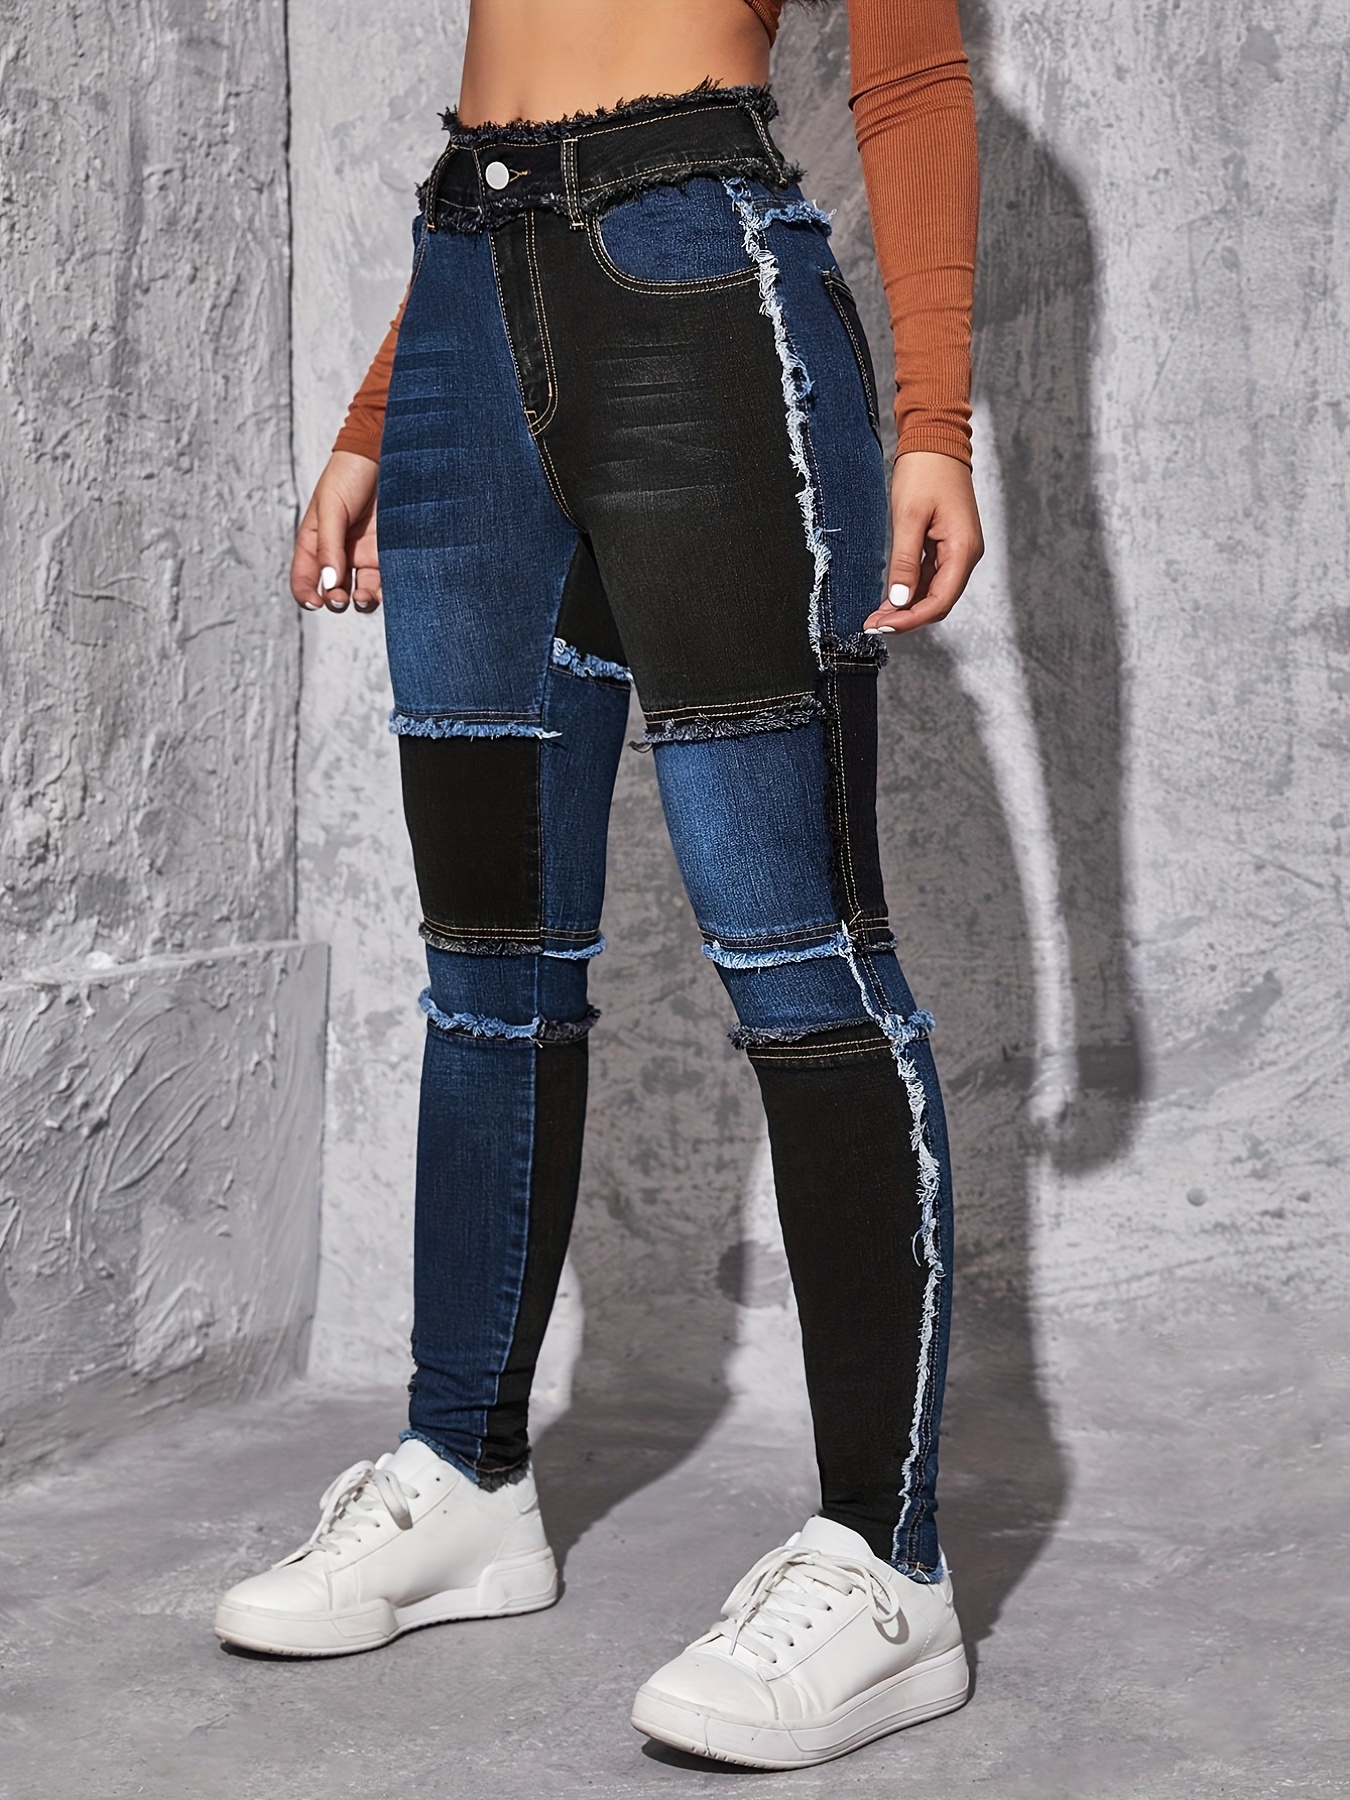 Colorblock * Trim Straight Jeans, Loose Fit High Waist * Versatile Denim  Pants, Women's Denim Jeans & Clothing